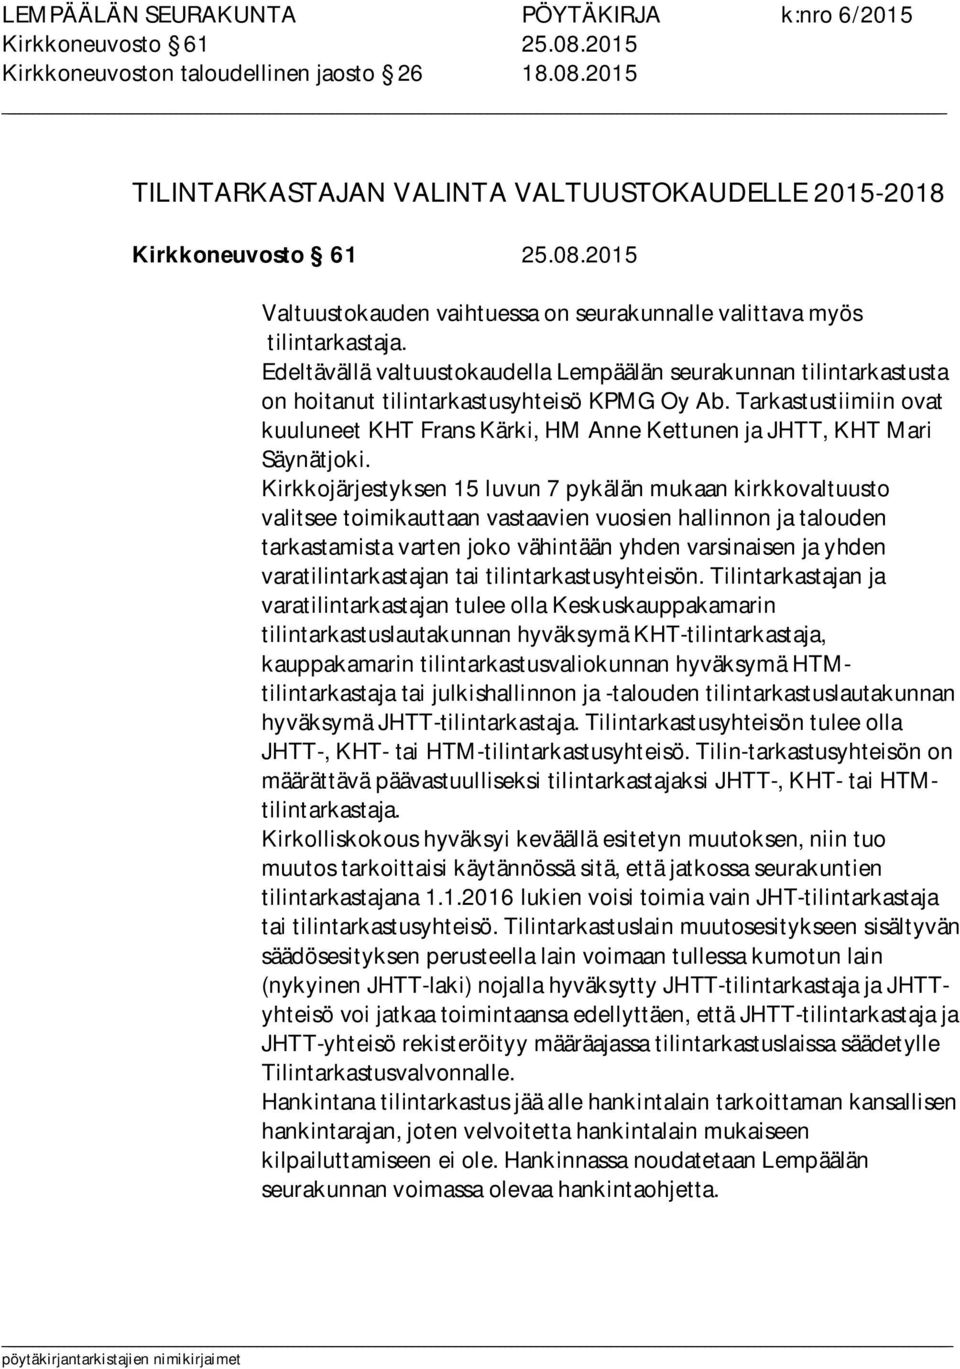 Tarkastustiimiin ovat kuuluneet KHT Frans Kärki, HM Anne Kettunen ja JHTT, KHT Mari Säynätjoki.